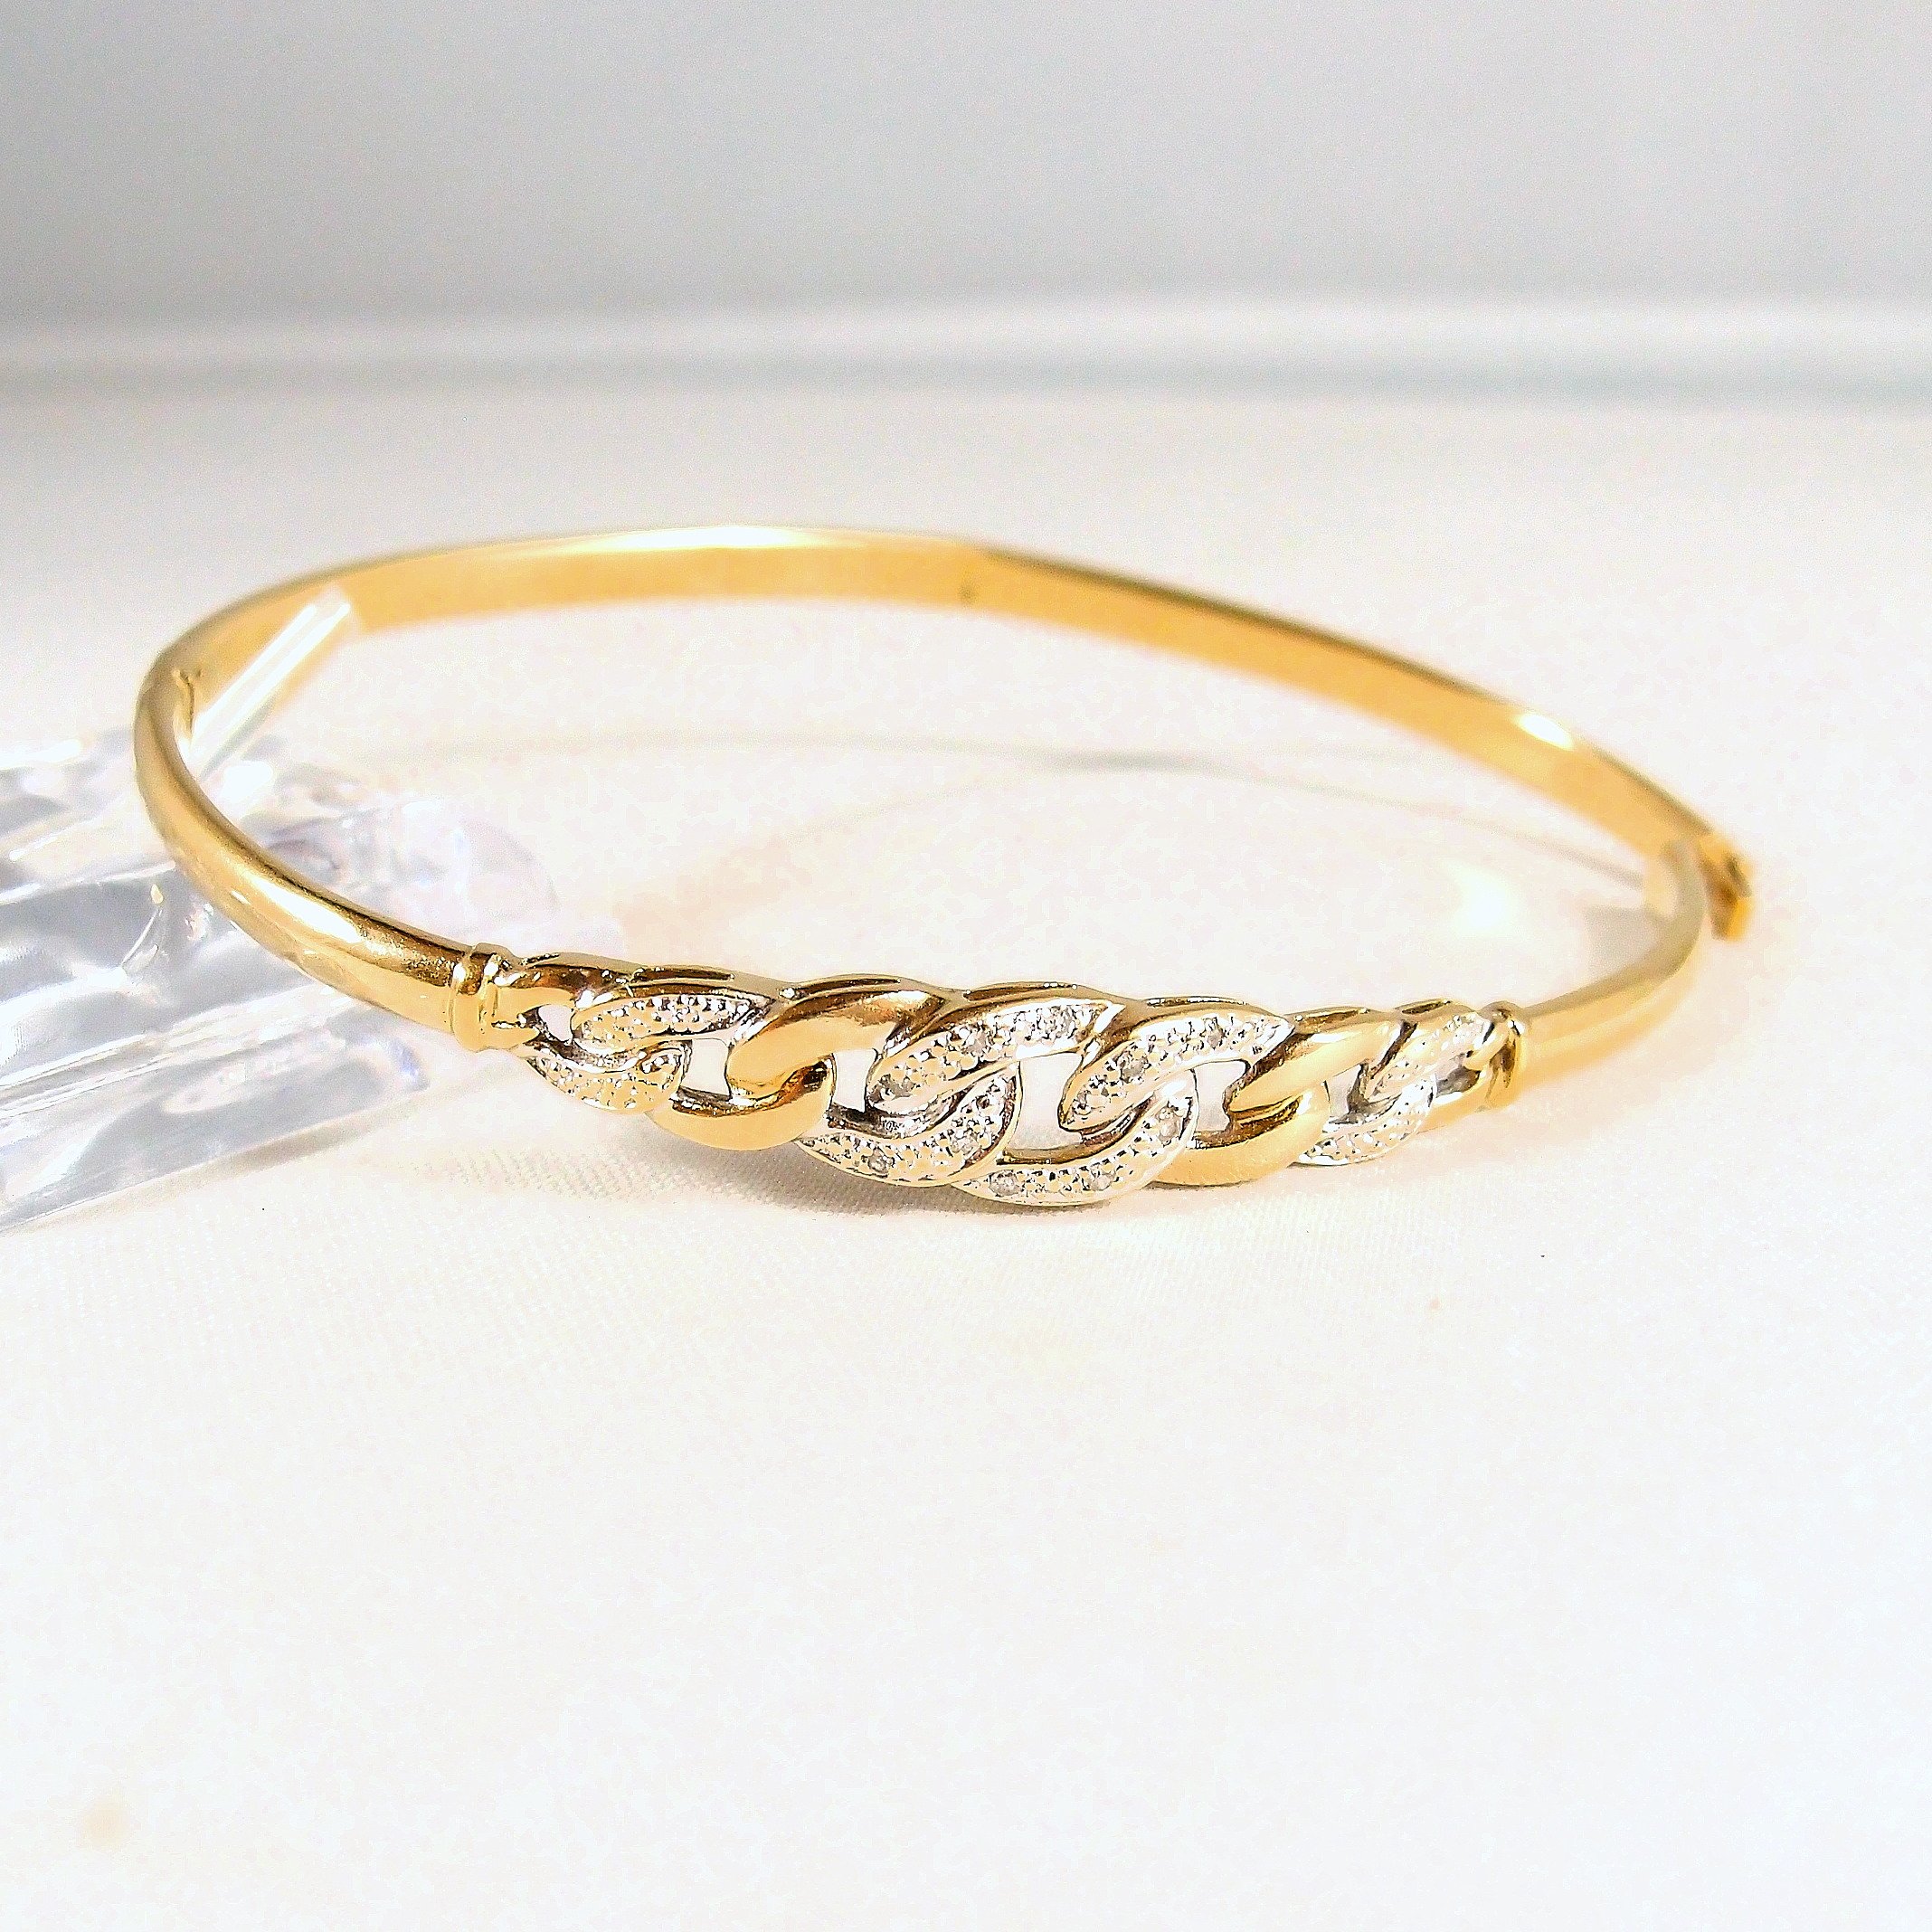 18K solid gold bangle bracelet, charming stamped gold hidden hinge ...